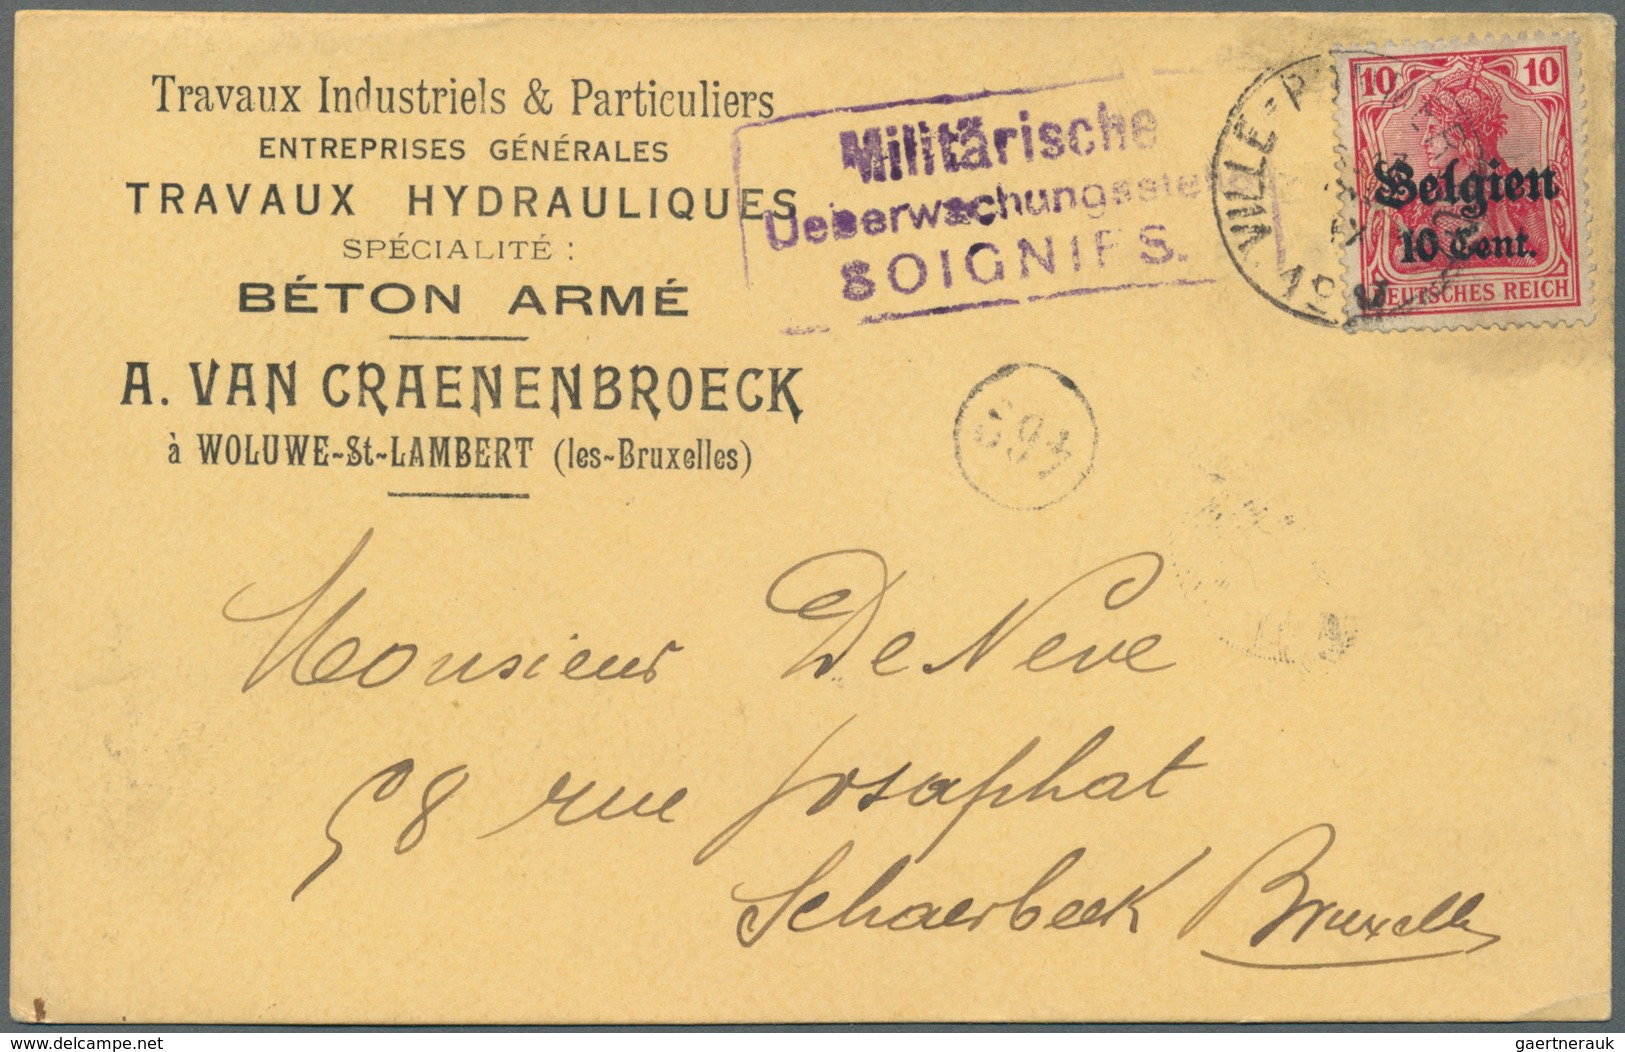 31875 Deutsche Besetzung I. WK: Landespost in Belgien: 1915/1918, Partie von ca. 94 Briefen und gebrauchte